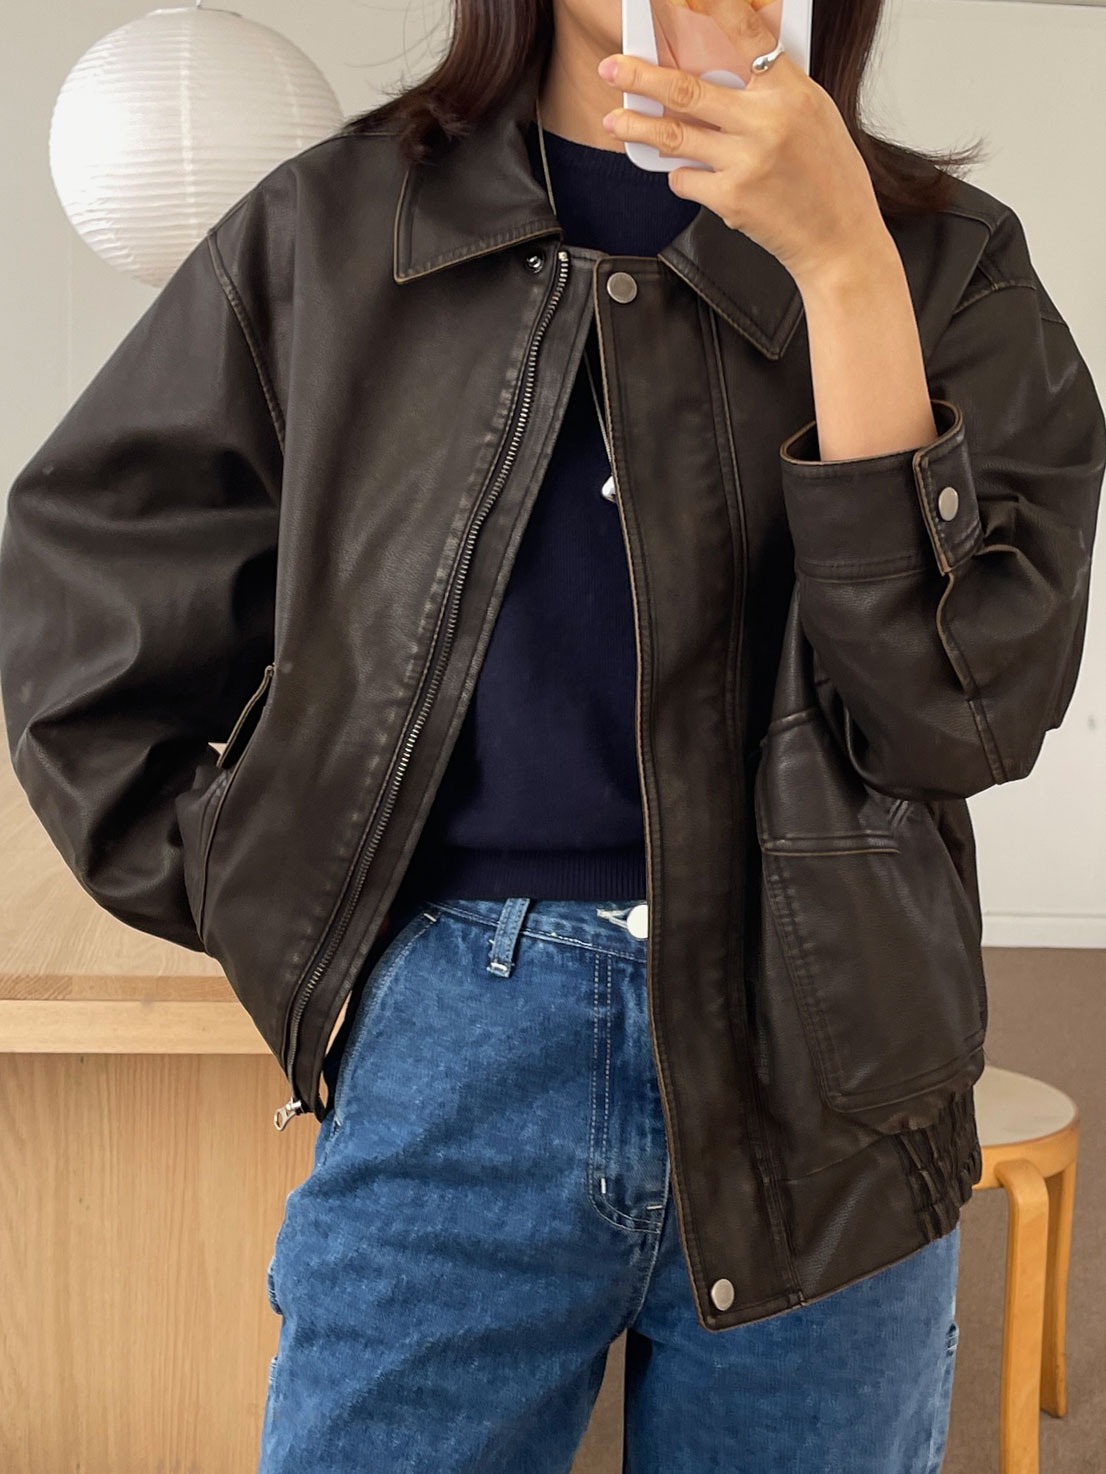 Leanna pigment leather jacket (2color)